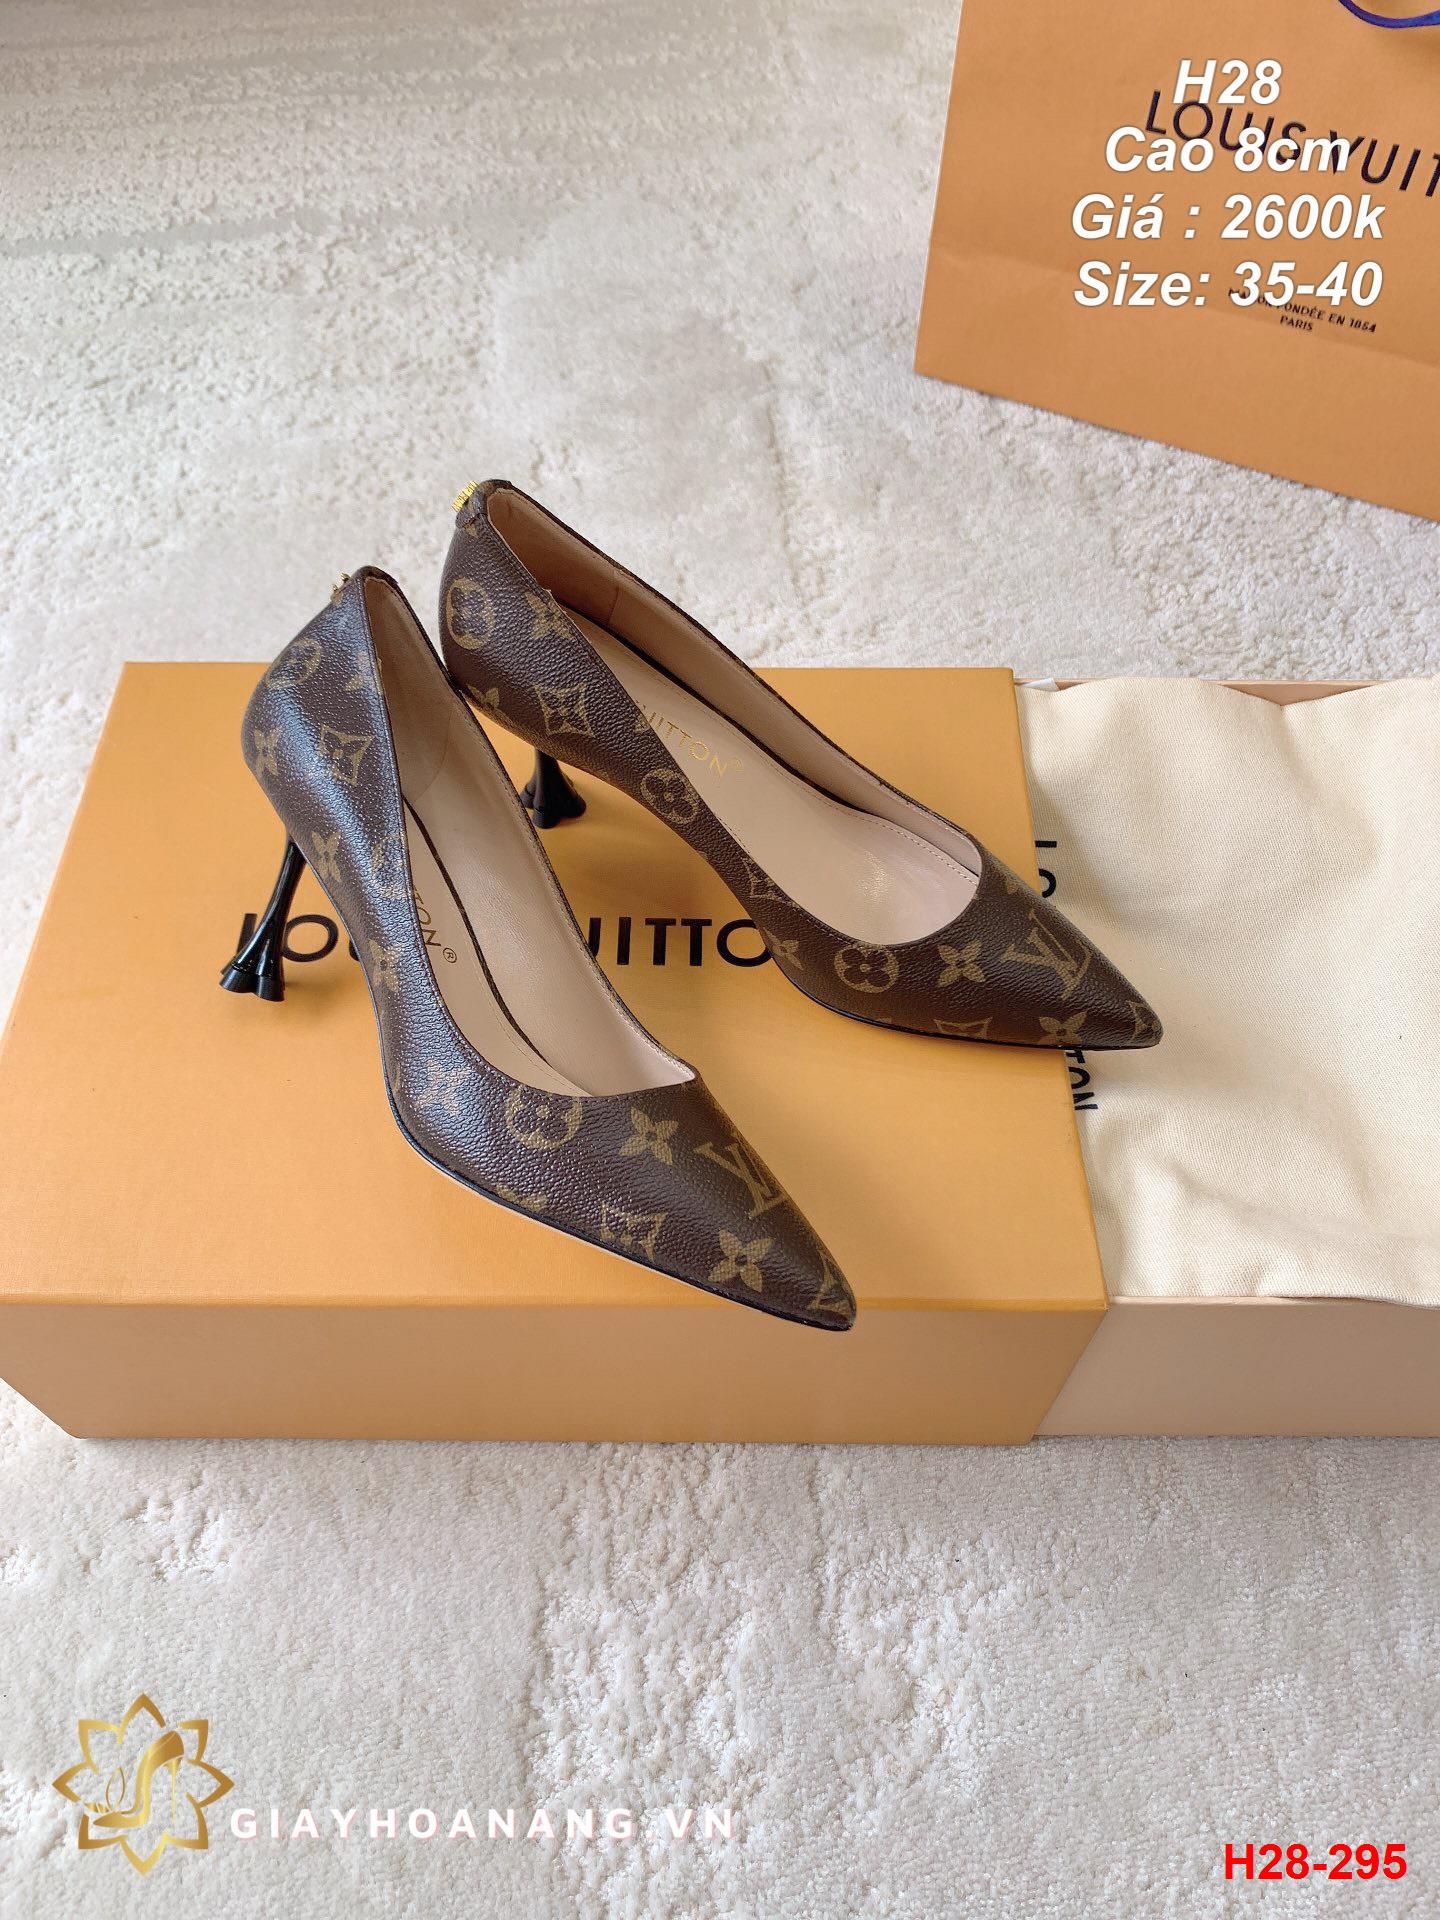 H28-295 Louis Vuitton giày cao 8cm siêu cấp